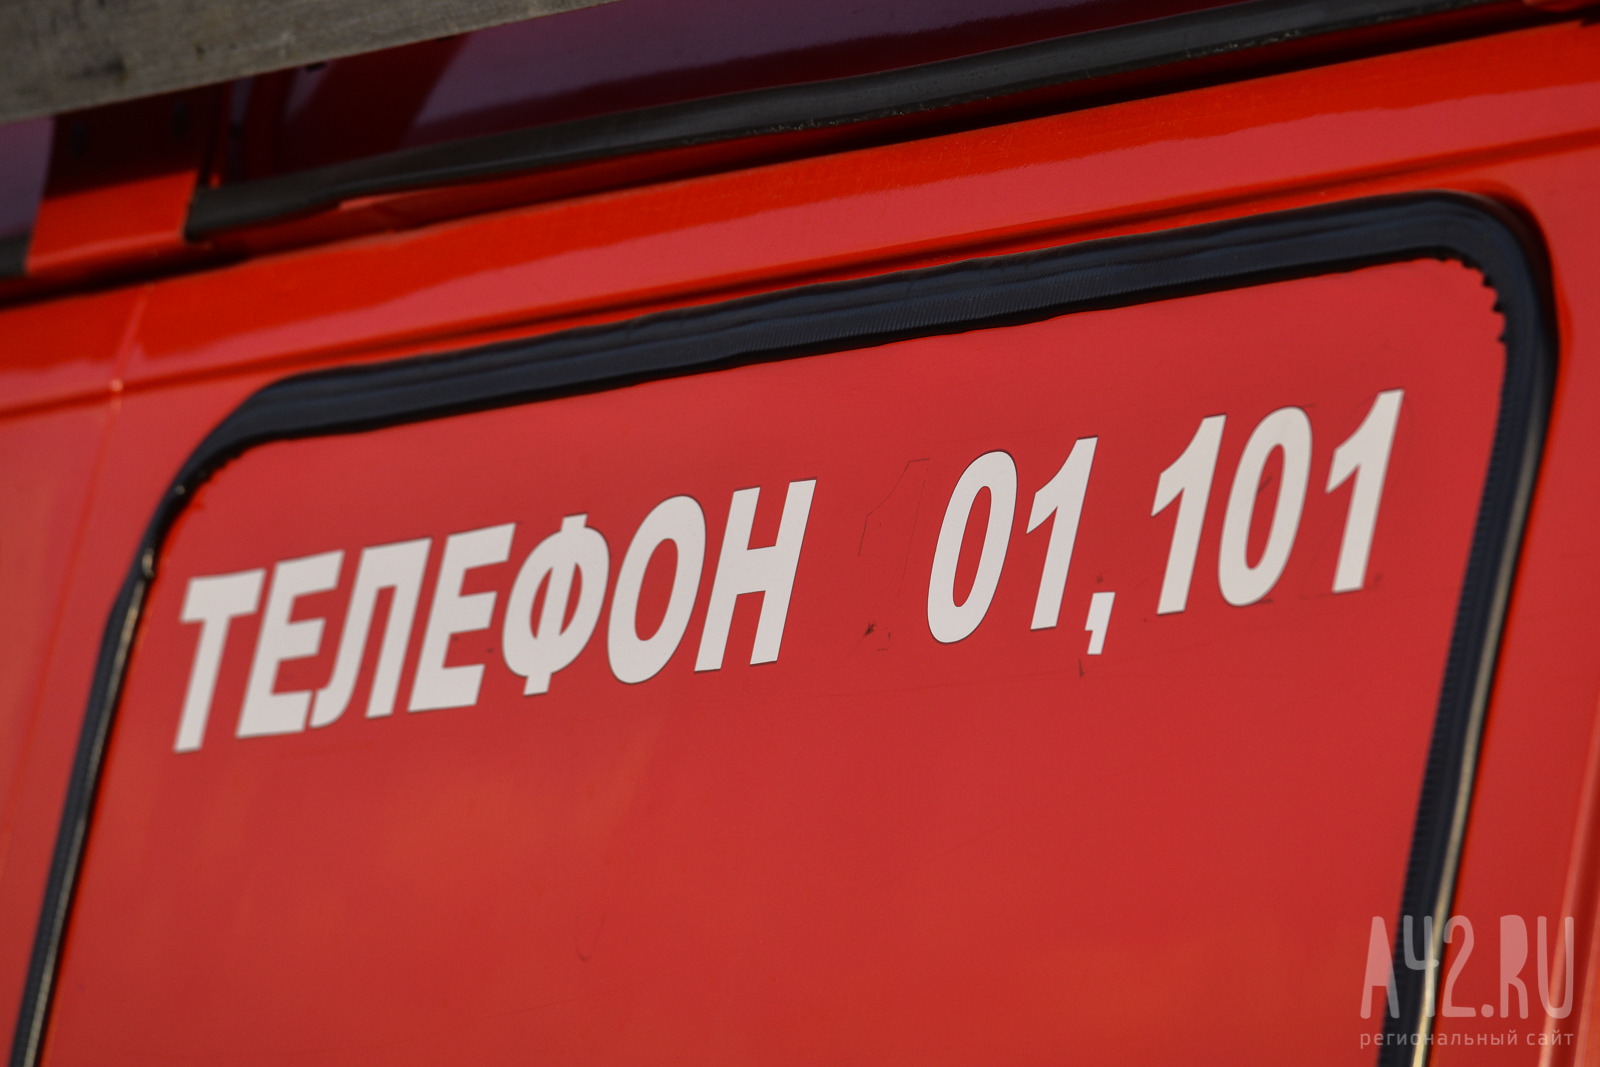 Пожарные спасли пятерых человек при пожаре в пятиэтажном доме в Кузбассе